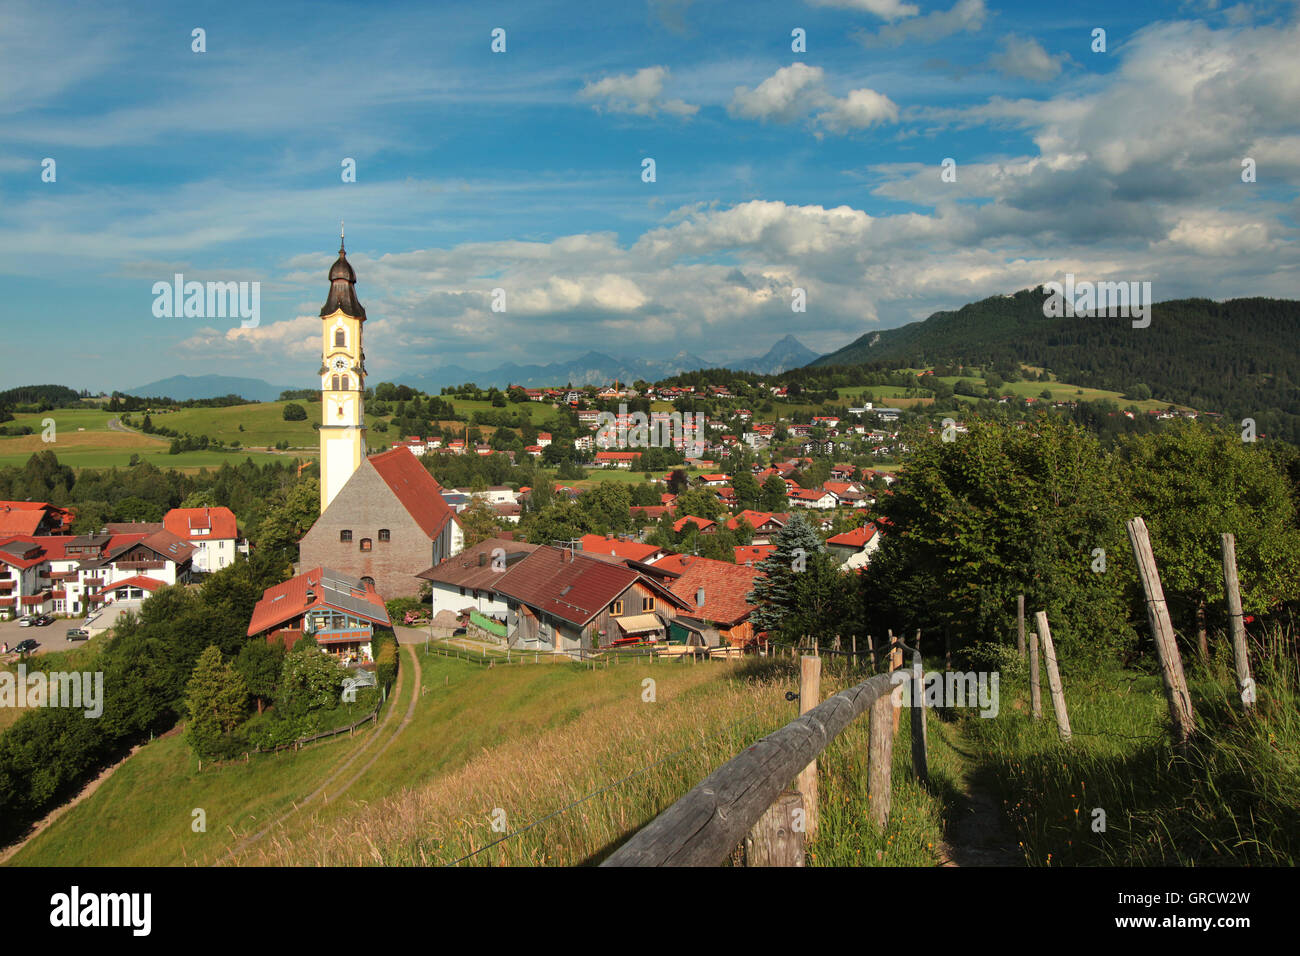 Pfronten della regione bavarese Allgaeu nelle Alpi Foto Stock